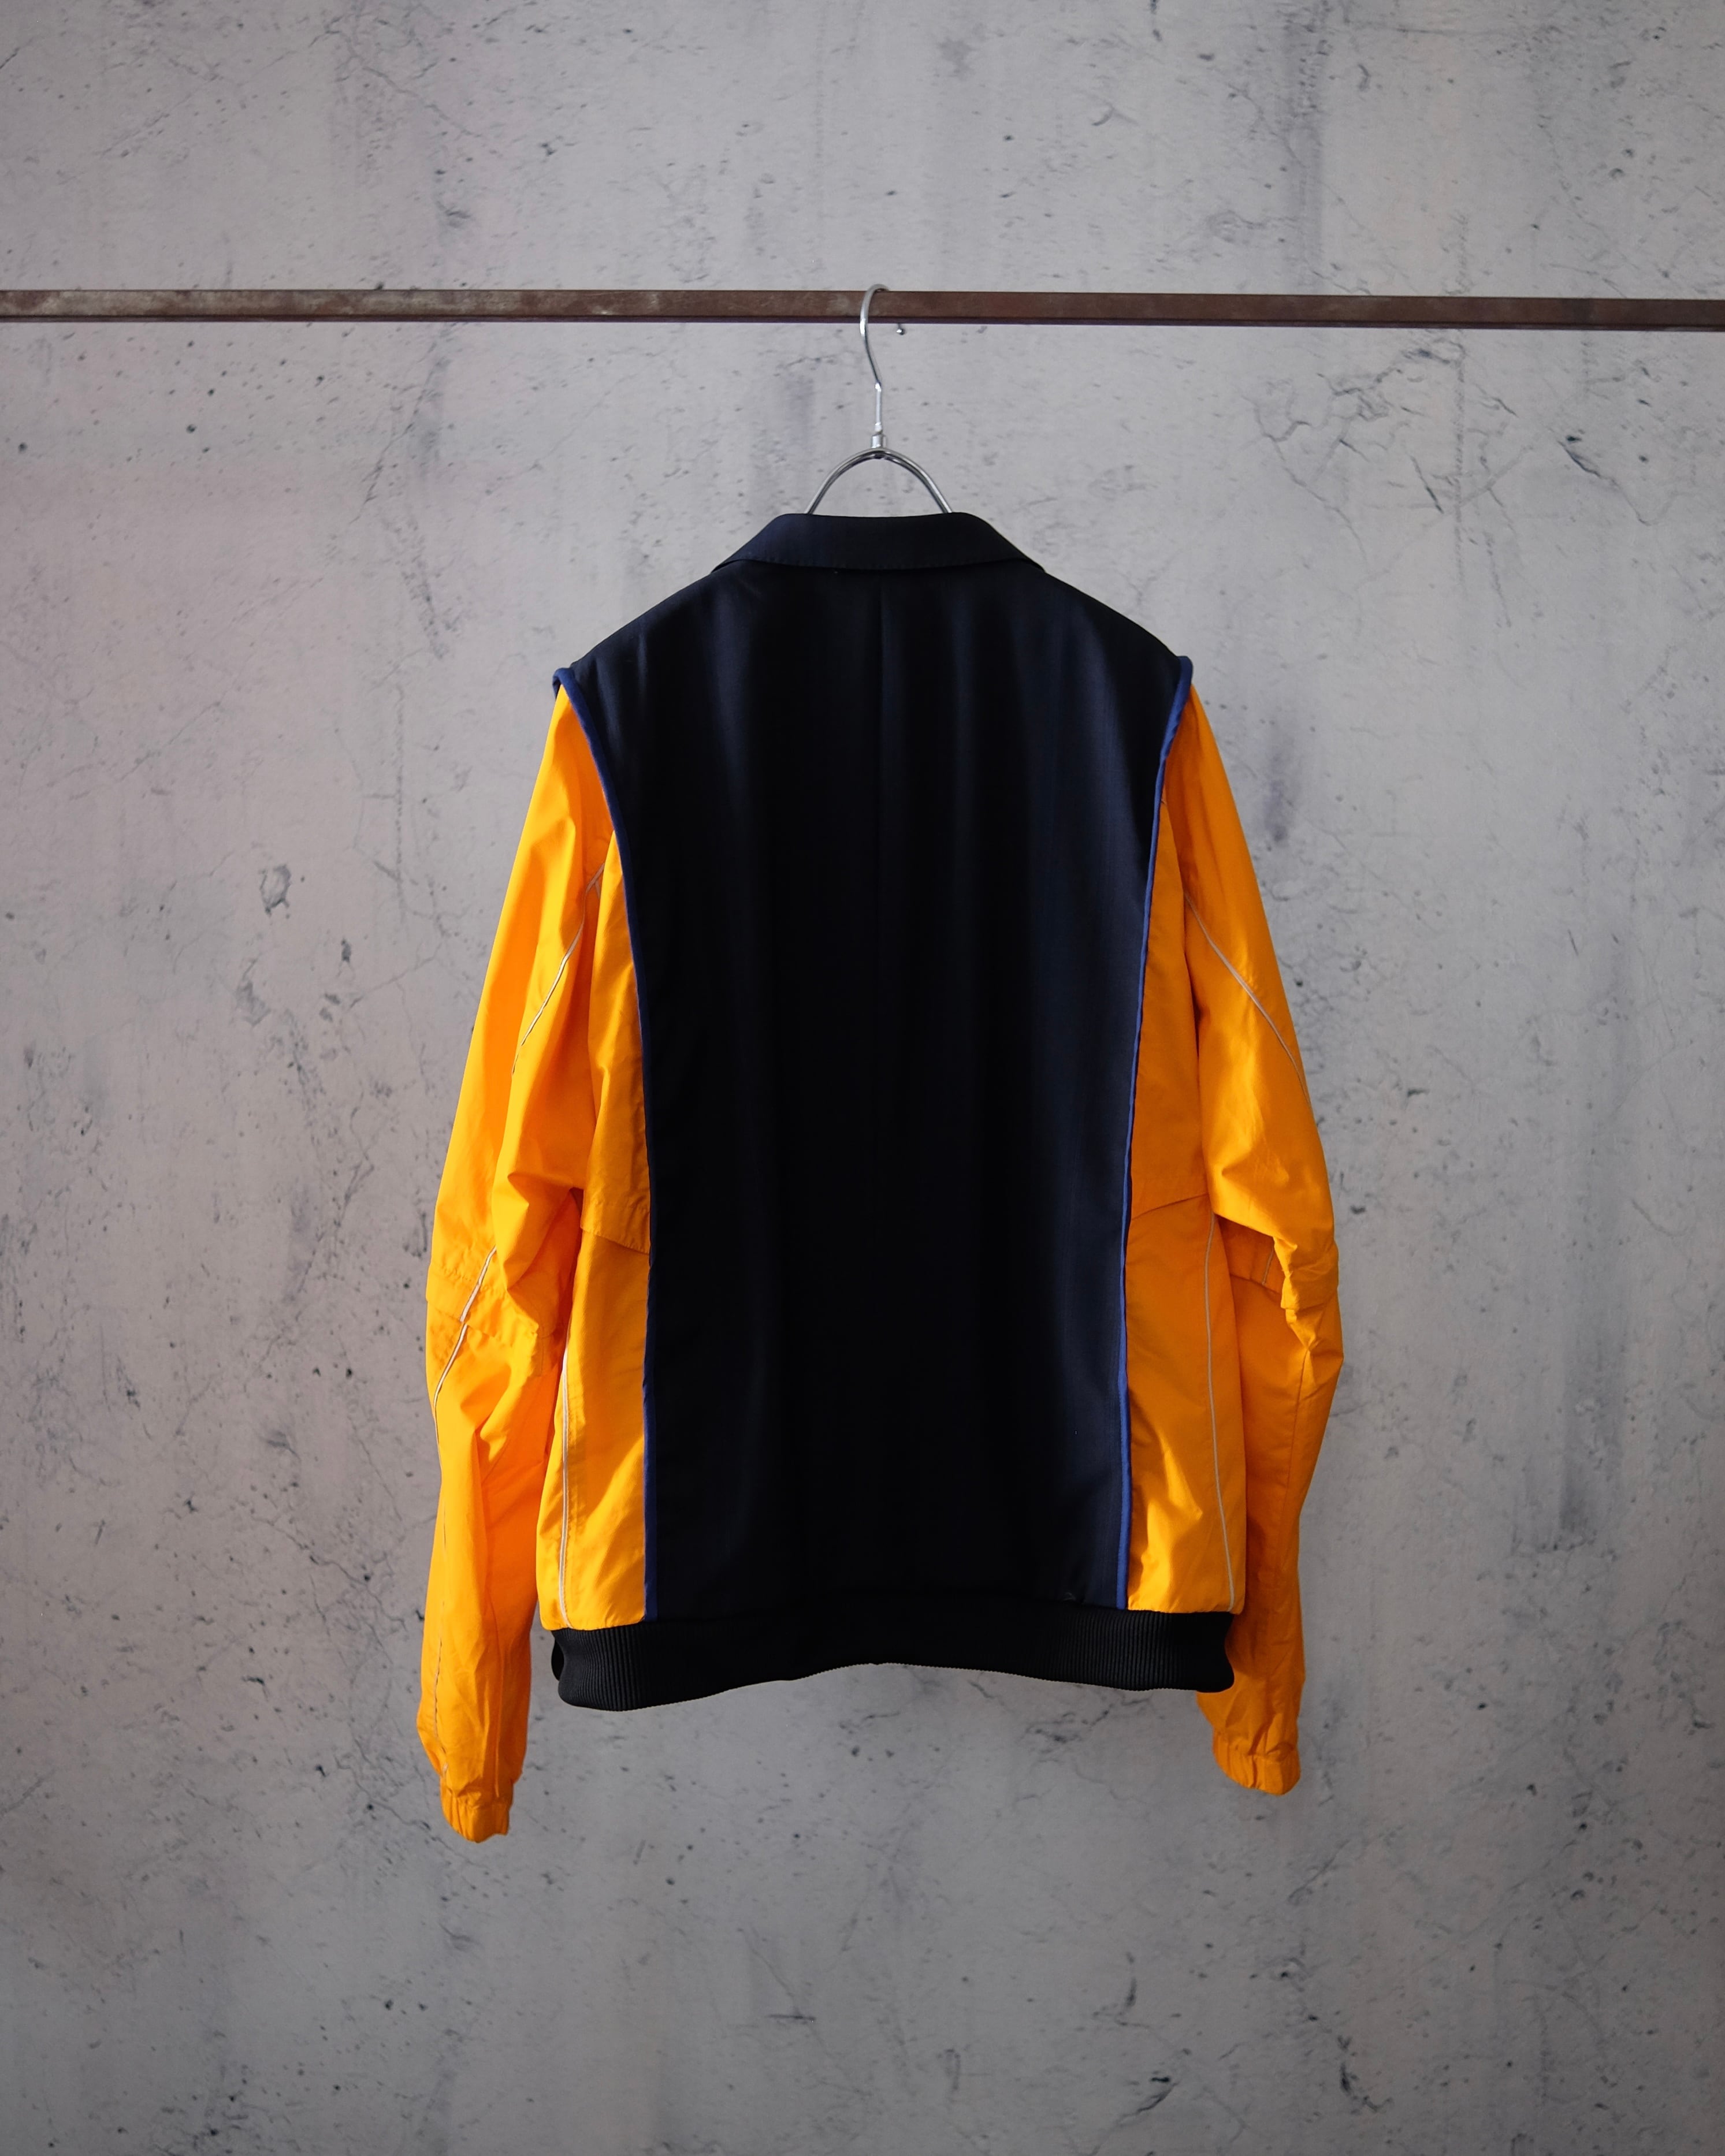 remake tailored short jacket(dark navy × orange) The words